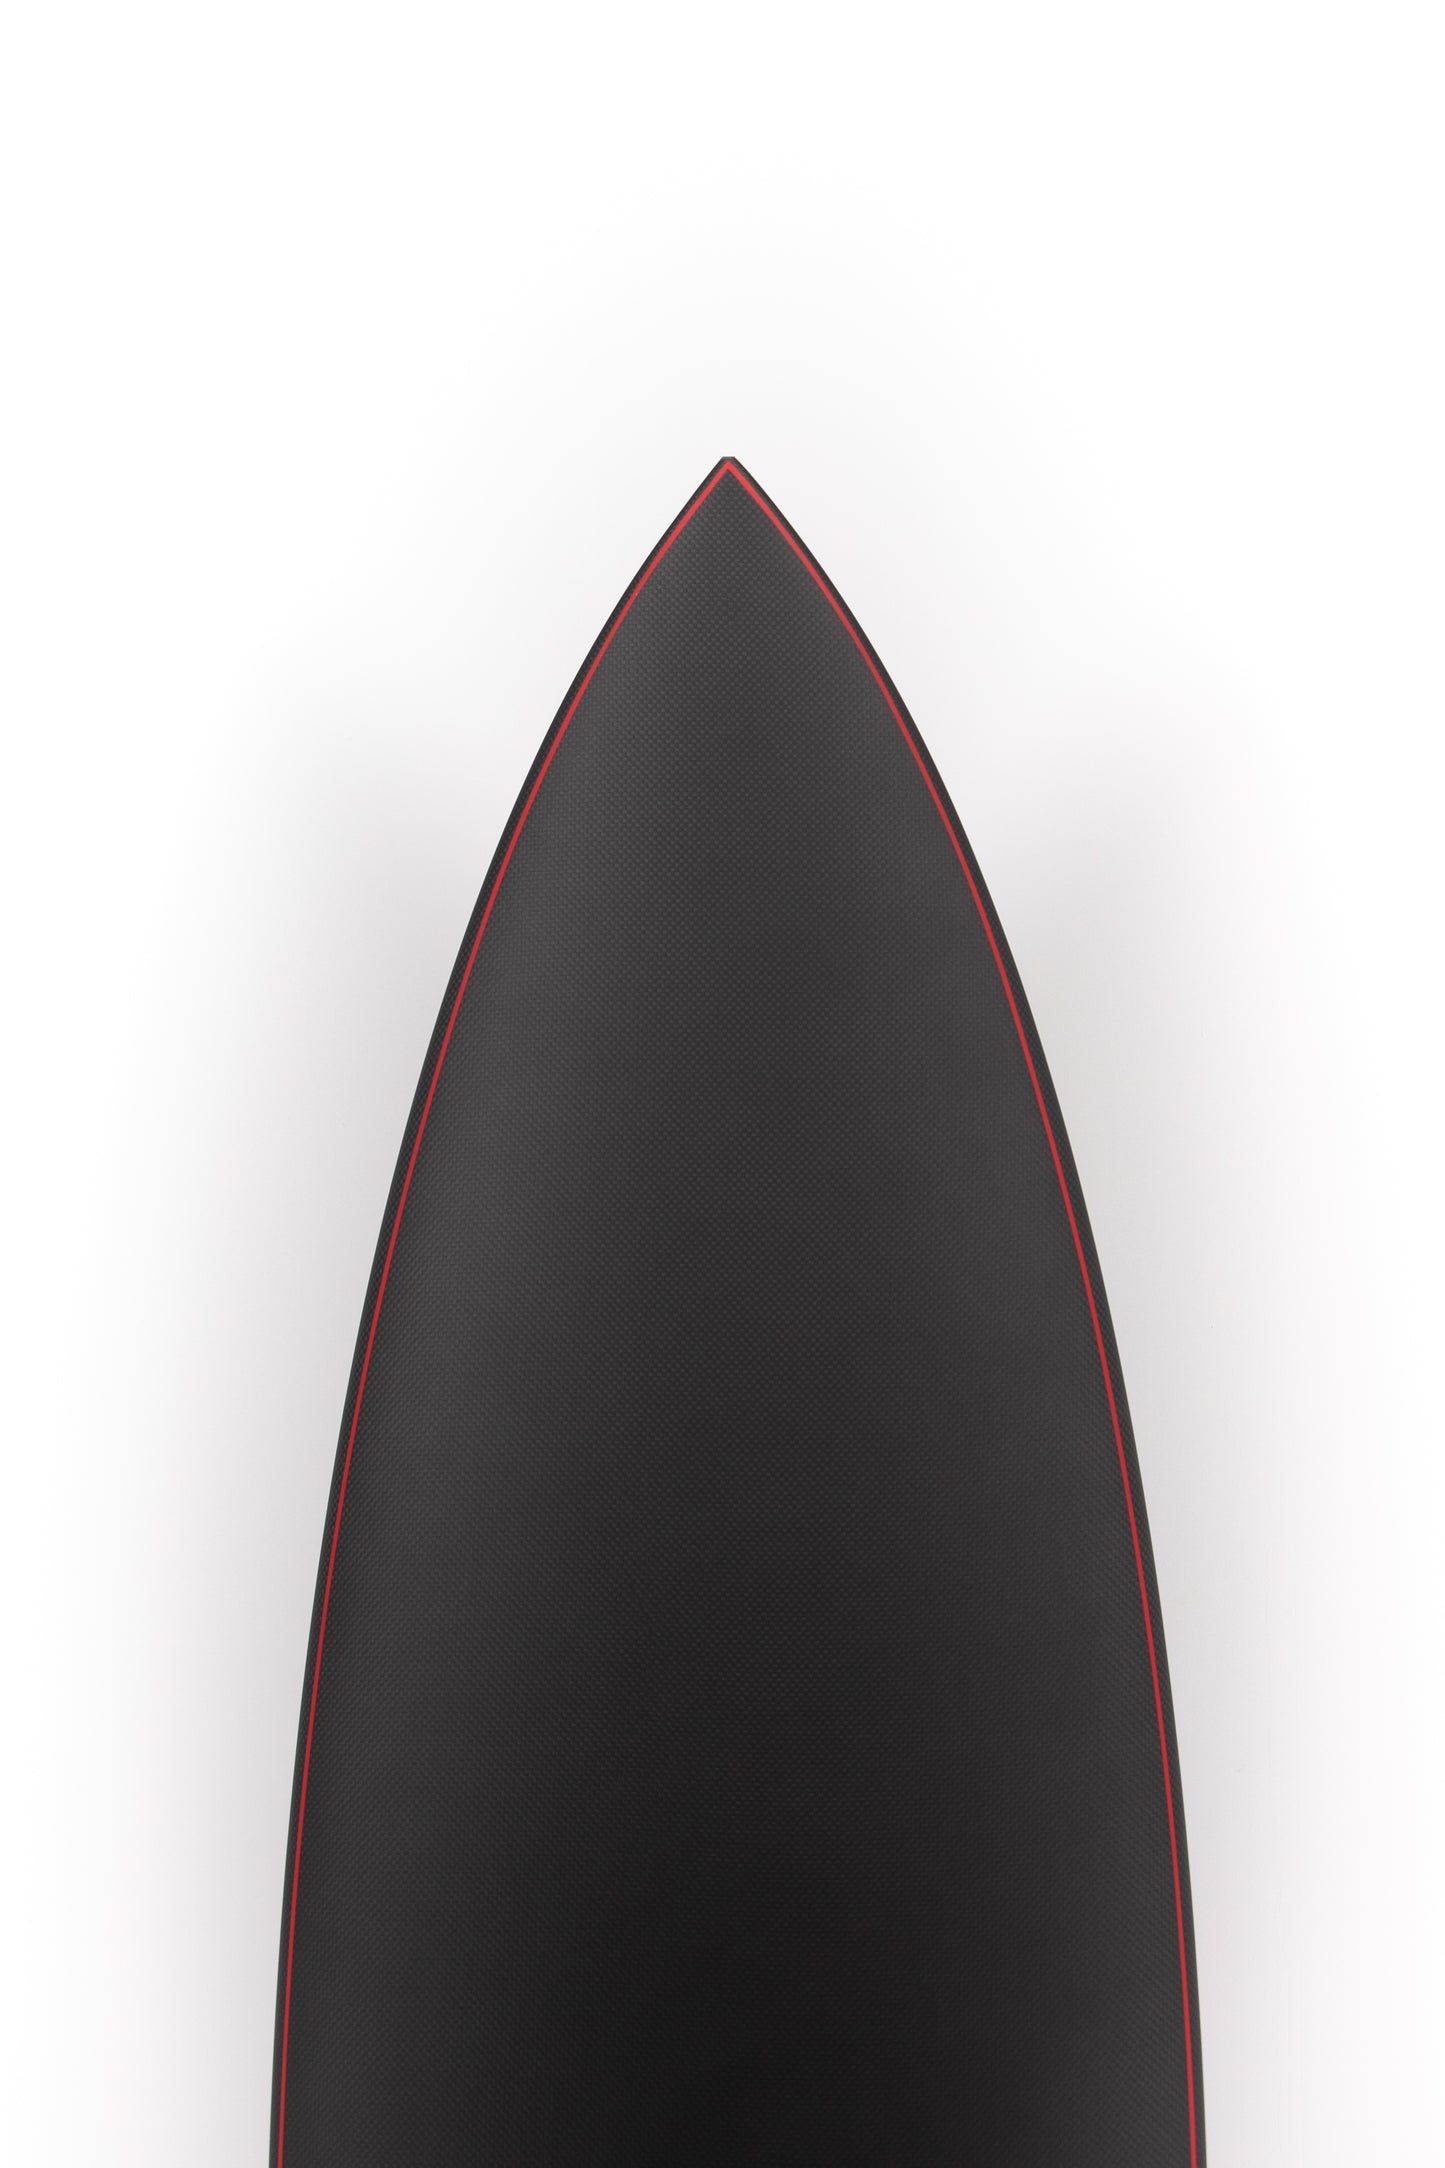 
                  
                    Pukas Surf Shop - JS Surfboards - XERO GRAVITY - CARBOTUNE - 6'0" x 19 3/4" x 2 1/2" x 32L. - JCBTXG60A
                  
                